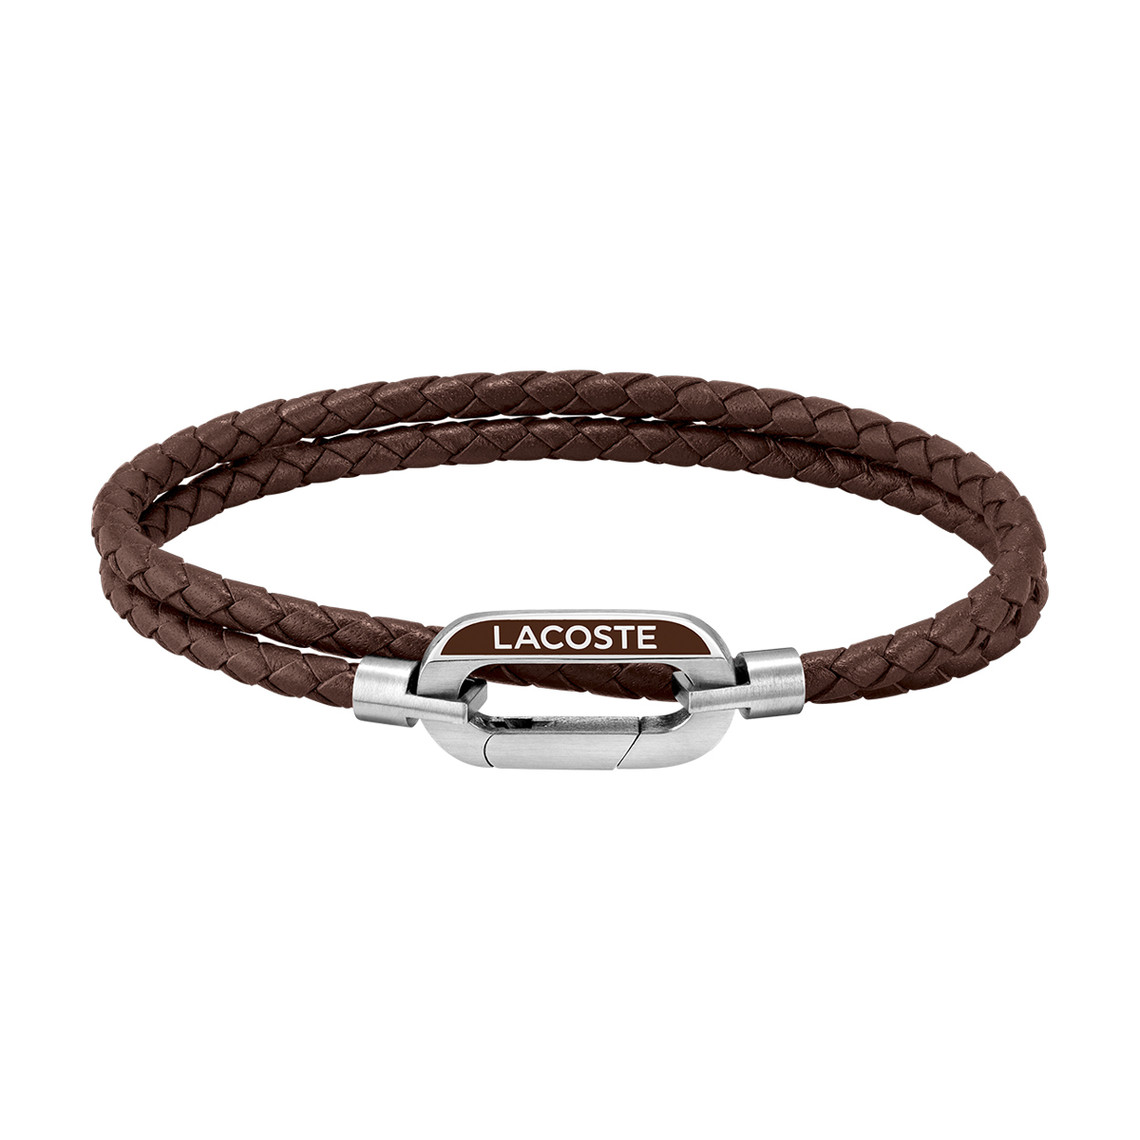 Bracelet Homme Lacoste Montres Starboard - 2040113S Acier, Cuir MARRON